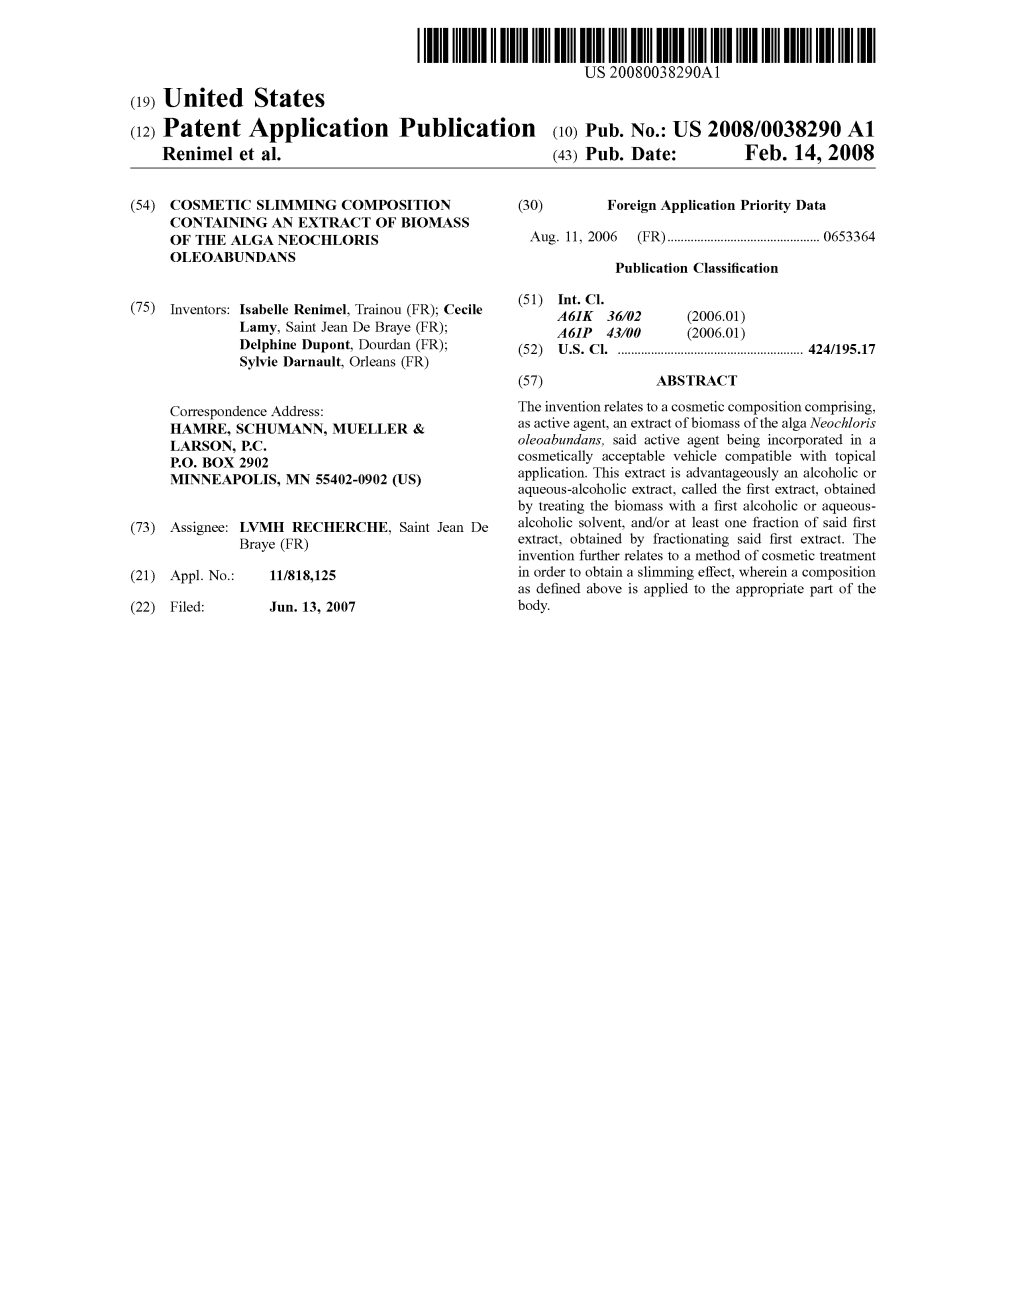 (12) Patent Application Publication (10) Pub. No.: US 2008/0038290 A1 Renimel Et Al